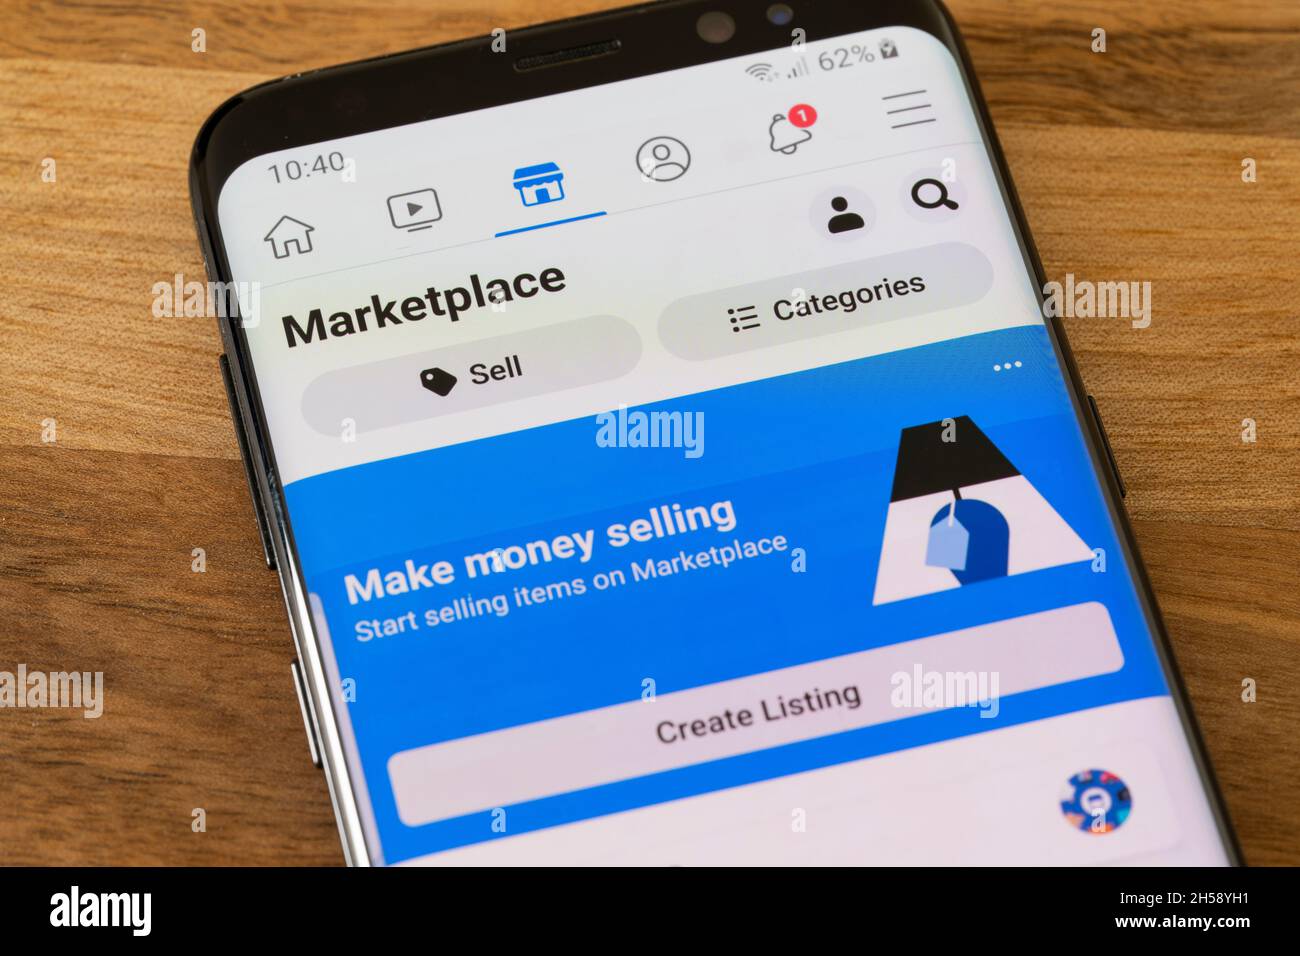 L'application Meta Facebook Marketplace pour l'achat et la vente en ligne de biens de personnes affichées sur un écran de smartphone.ROYAUME-UNI Banque D'Images